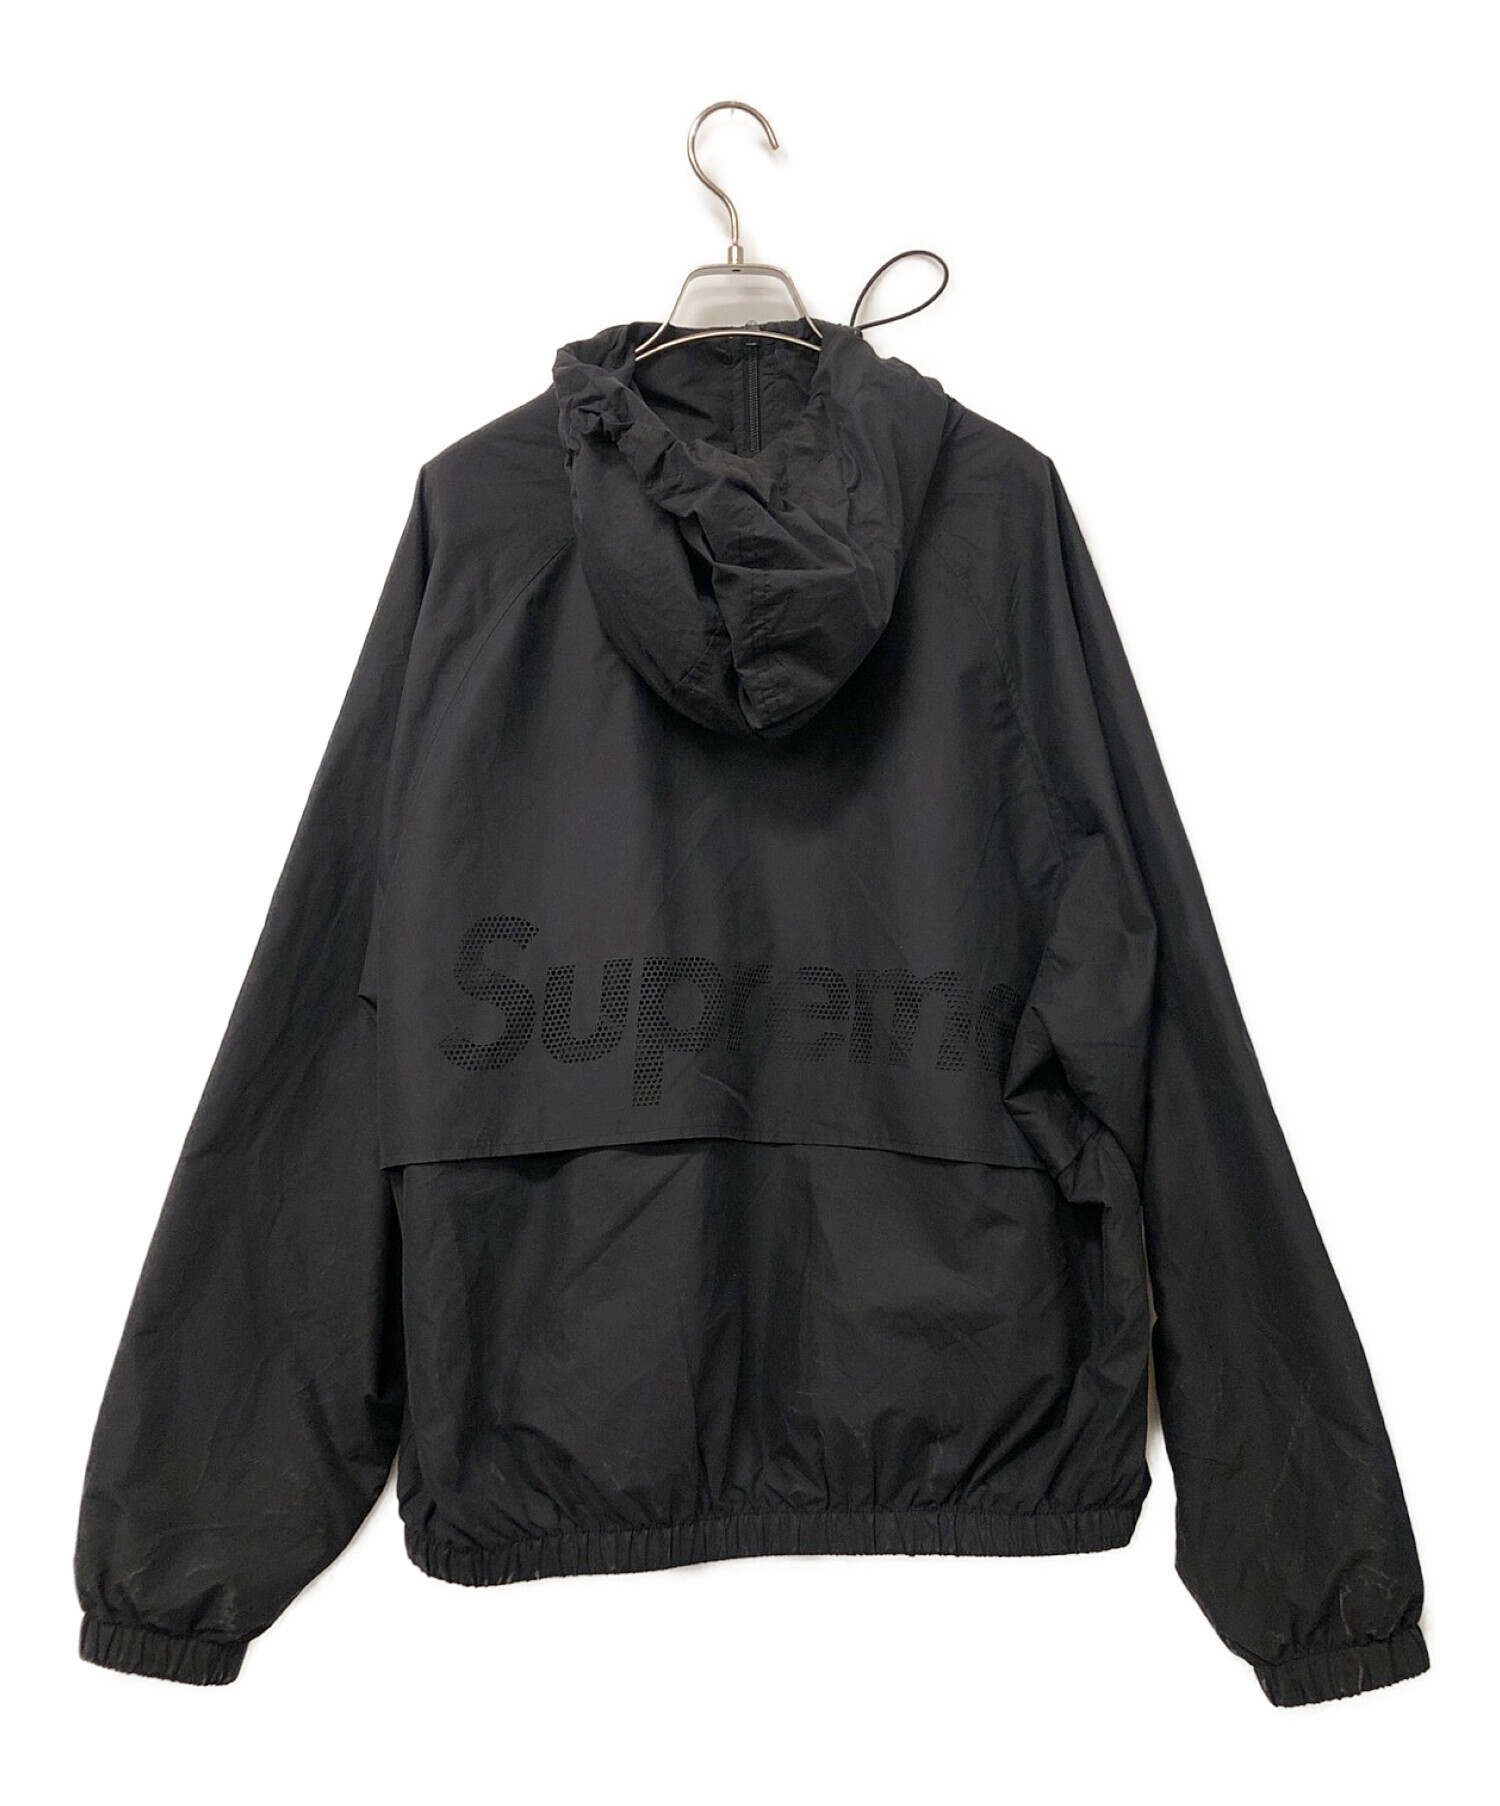 10,315円展示品 supreme 最軽量 防寒 ナイロン パーカー ジャケット ブラック